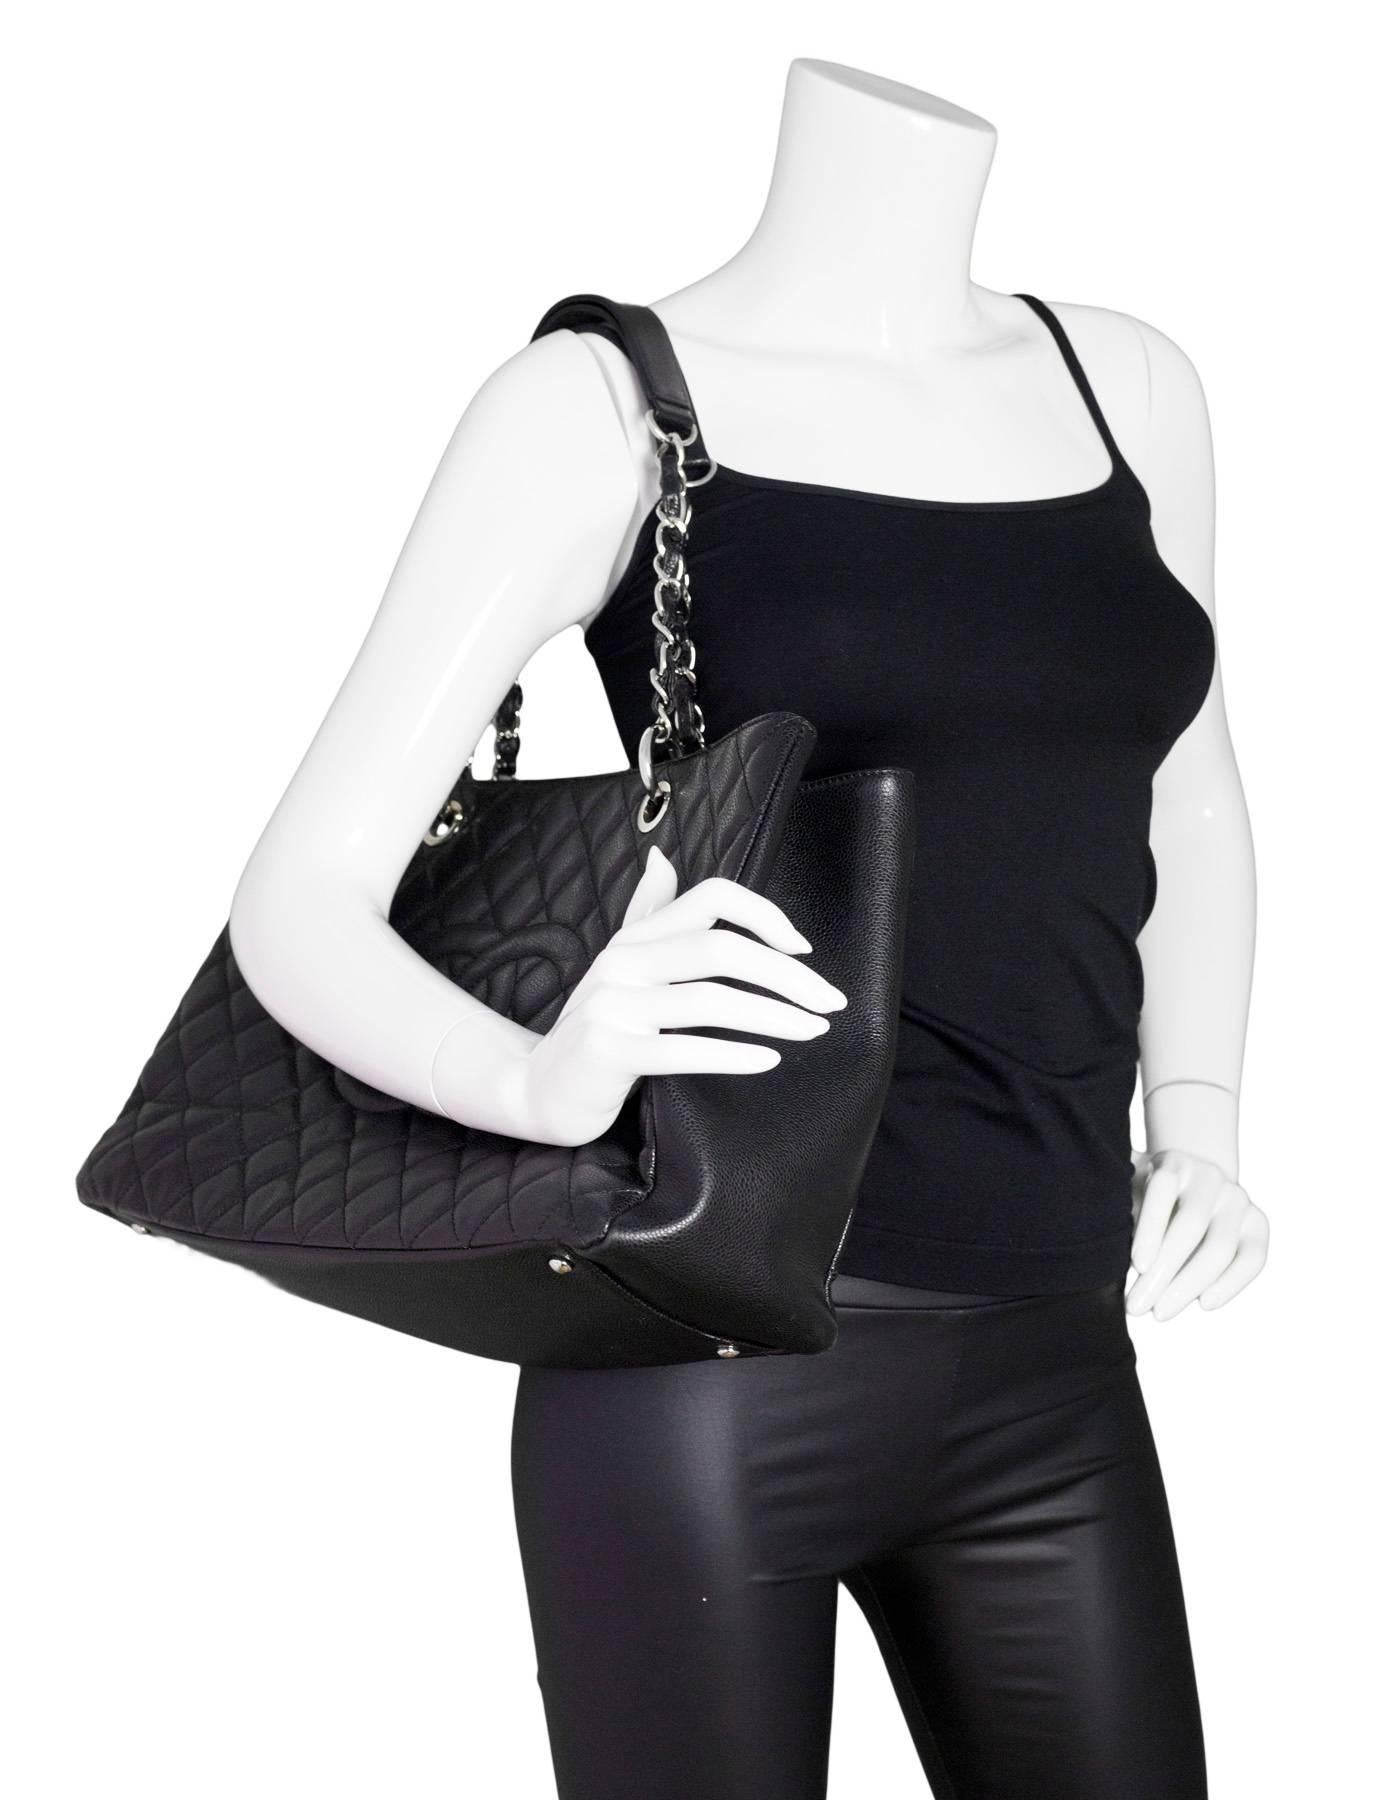 Chanel Black Caviar Leather XL Grand Shopper Tote GST Bag 6